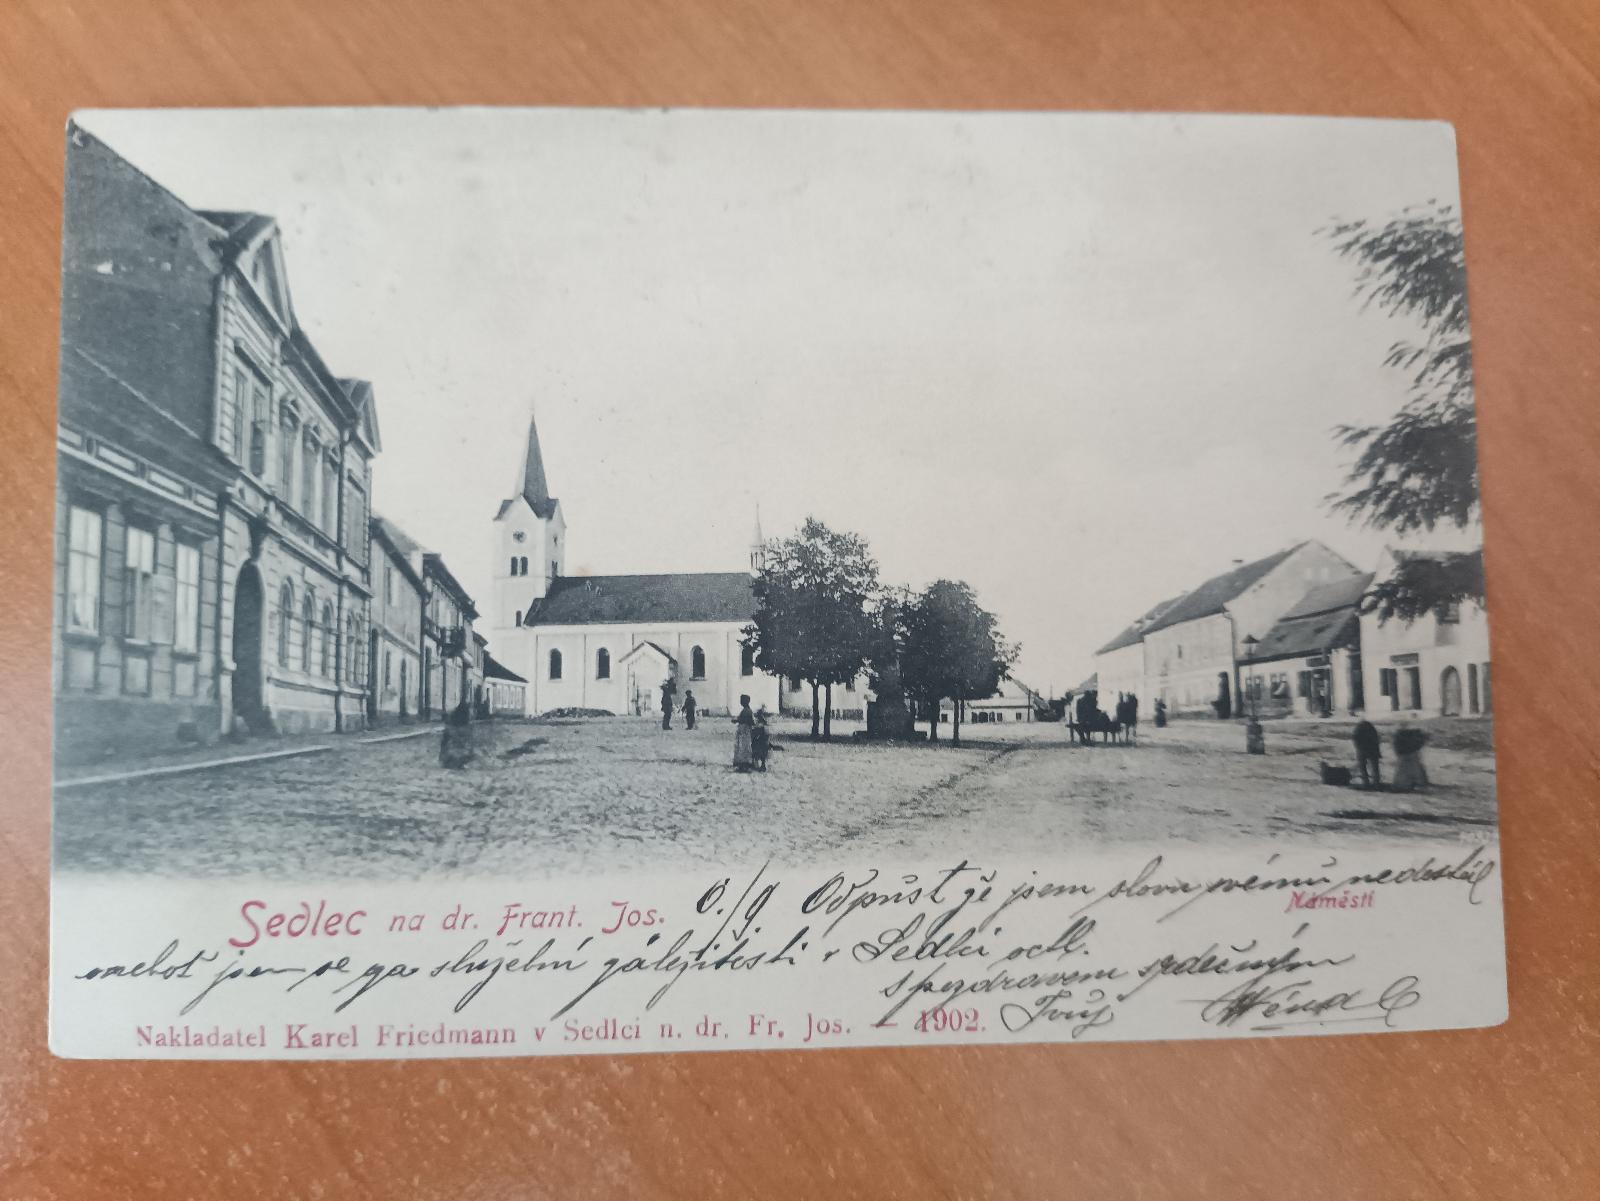 Listy Sedlec na dráhe Frant. Jozefa (dnešný Sedlec-Prčice) 1903 - Pohľadnice miestopis